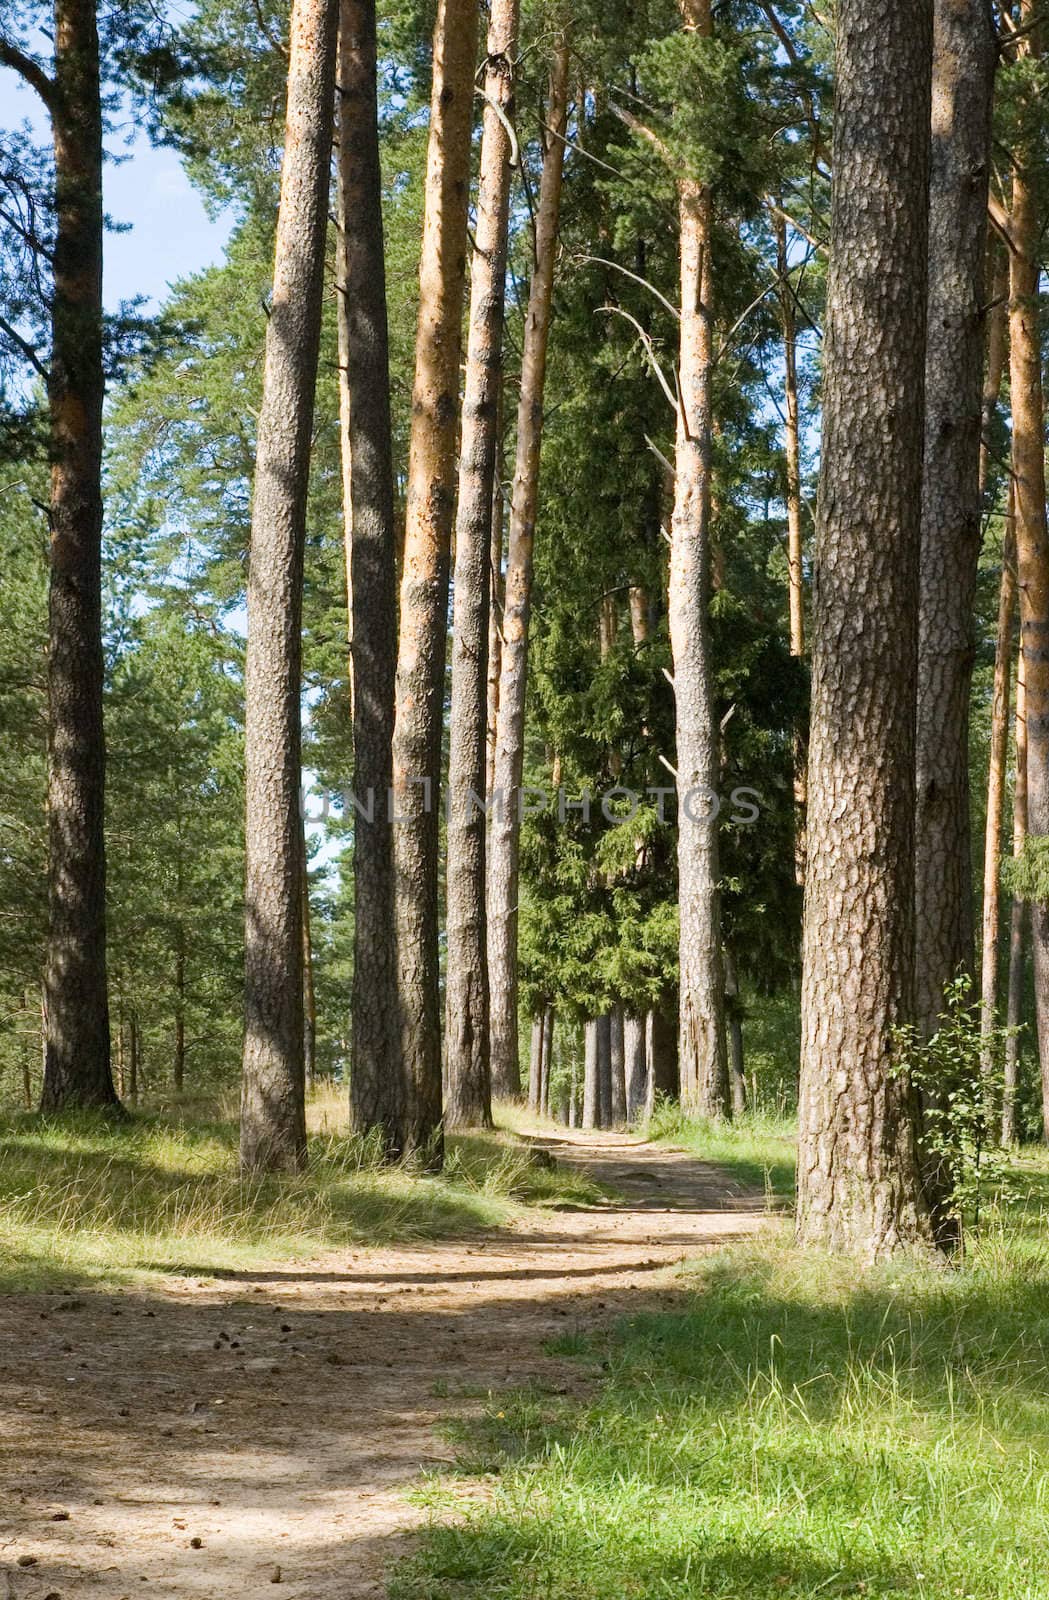 Footpath in a pine wood by Ravenestling